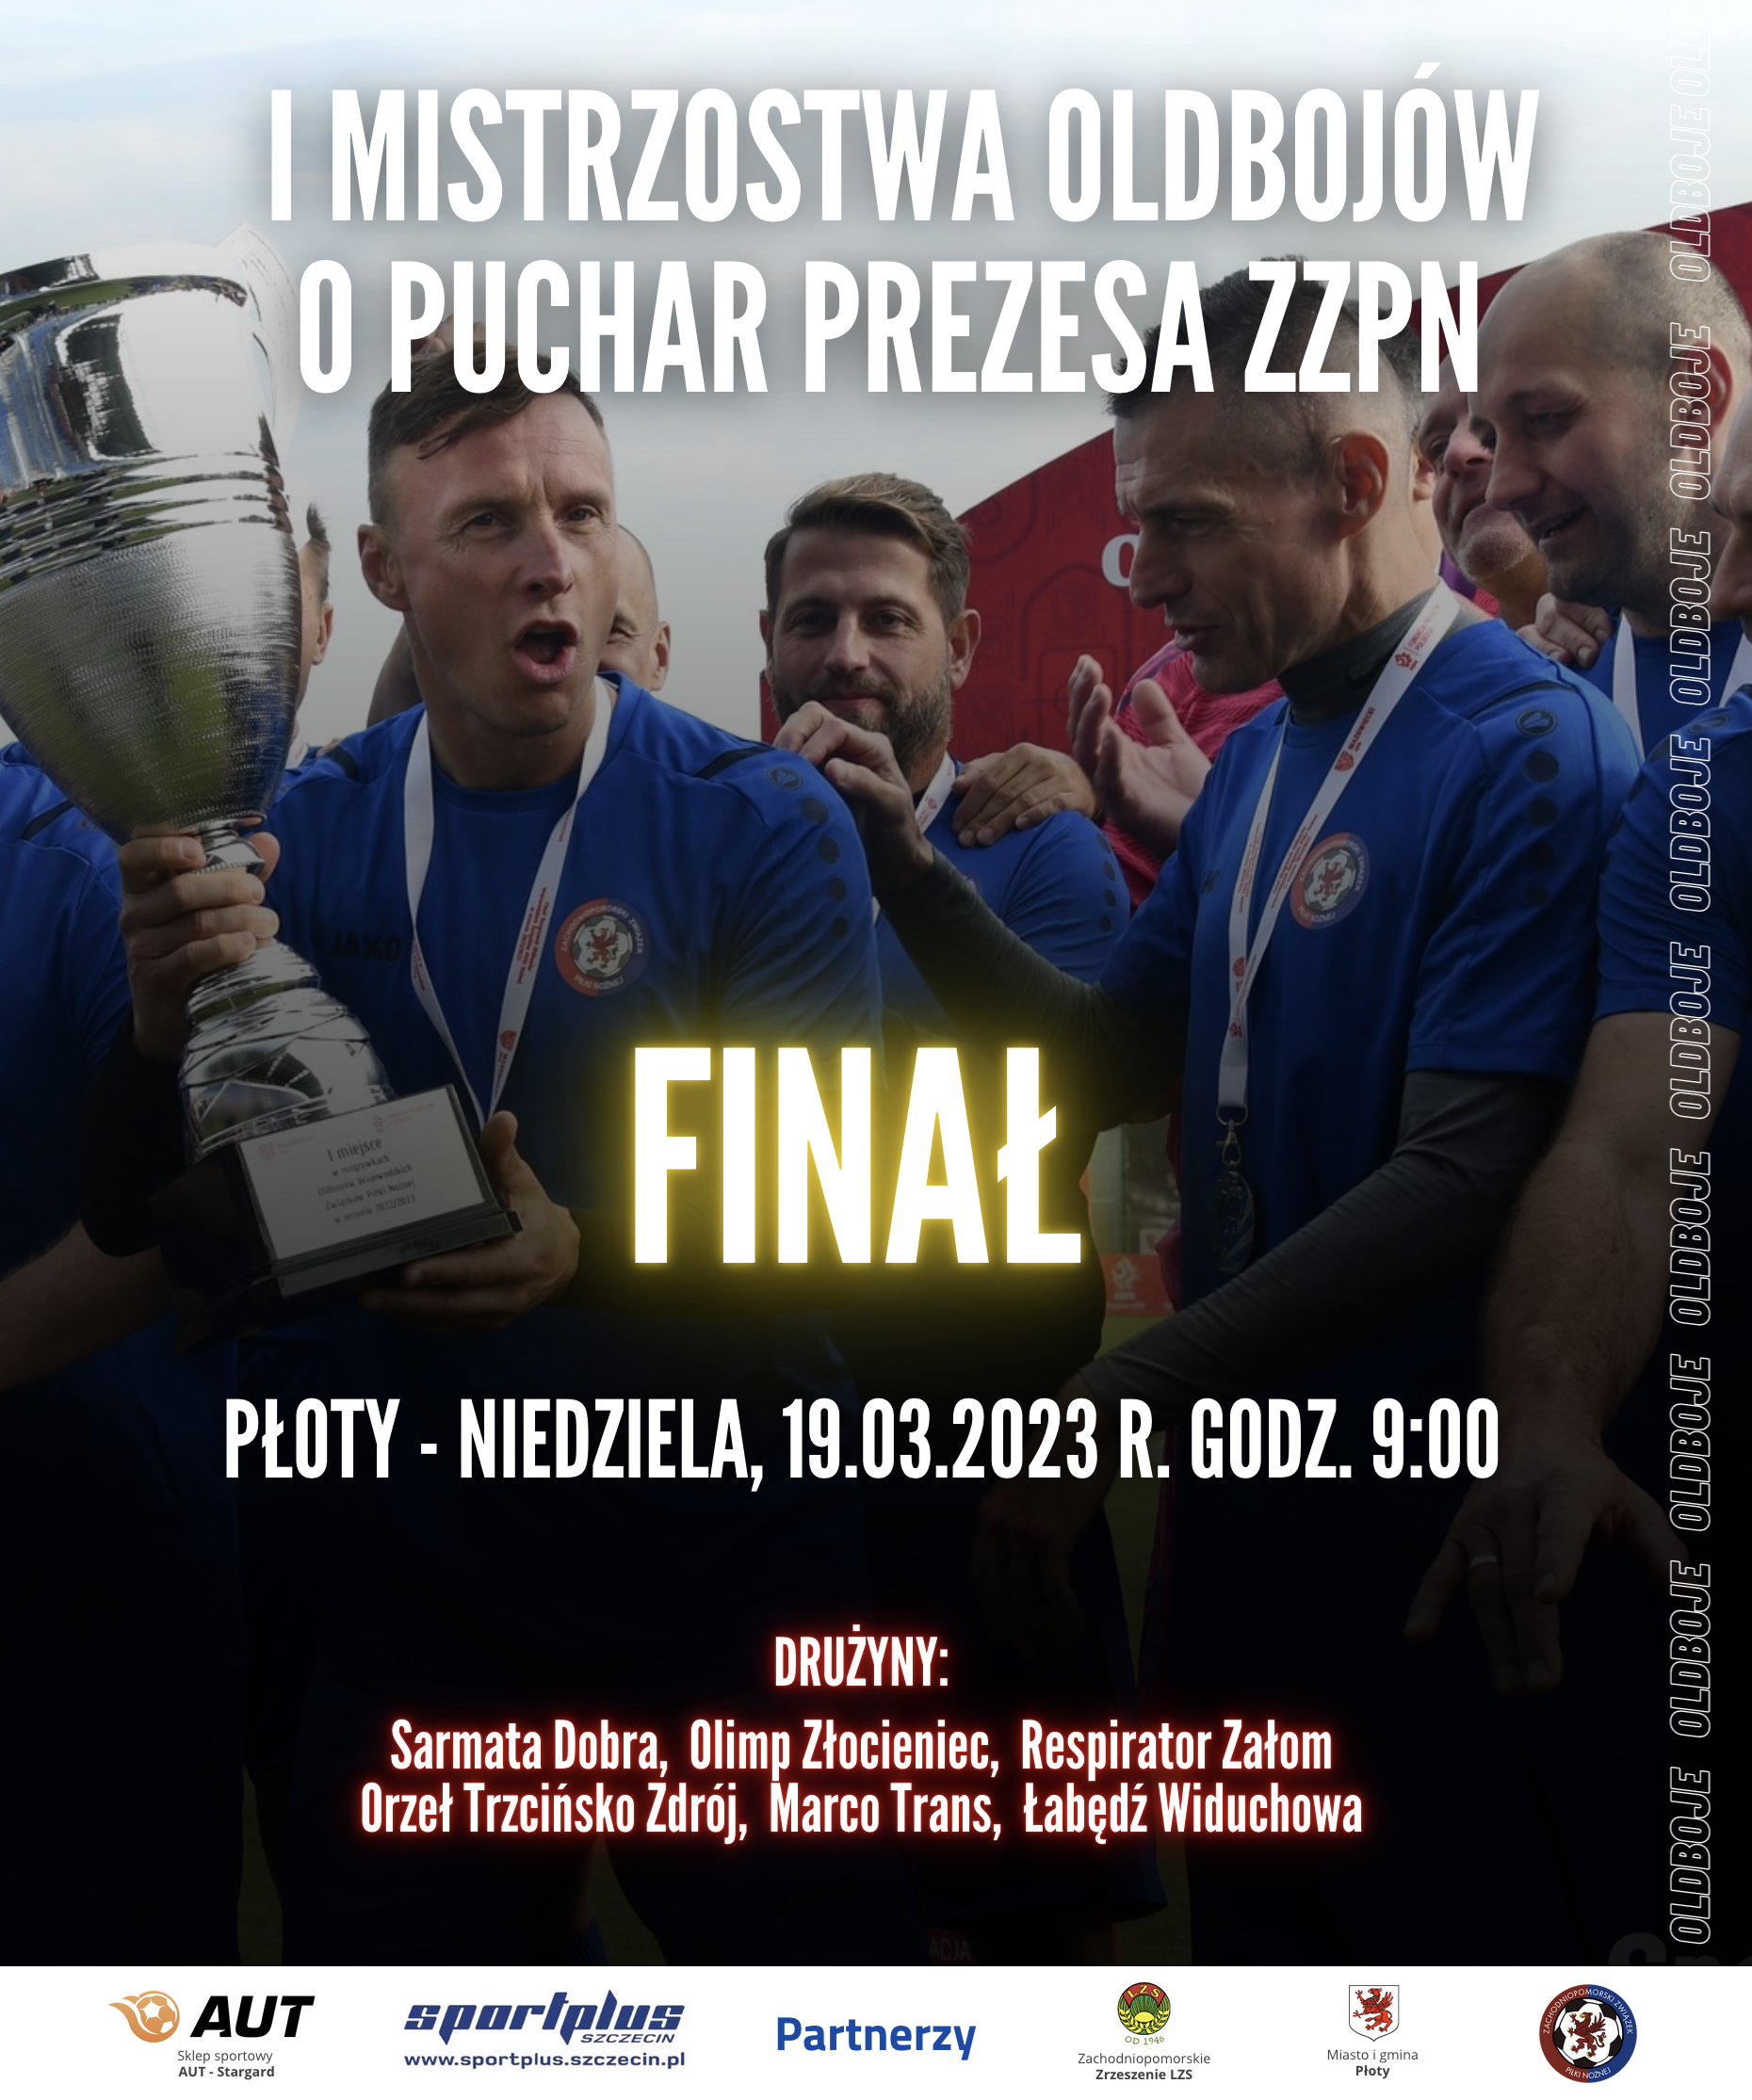 Turniej Finałowy I Mistrzostw Oldbojów o Puchar Prezesa ZZPN w Płotach